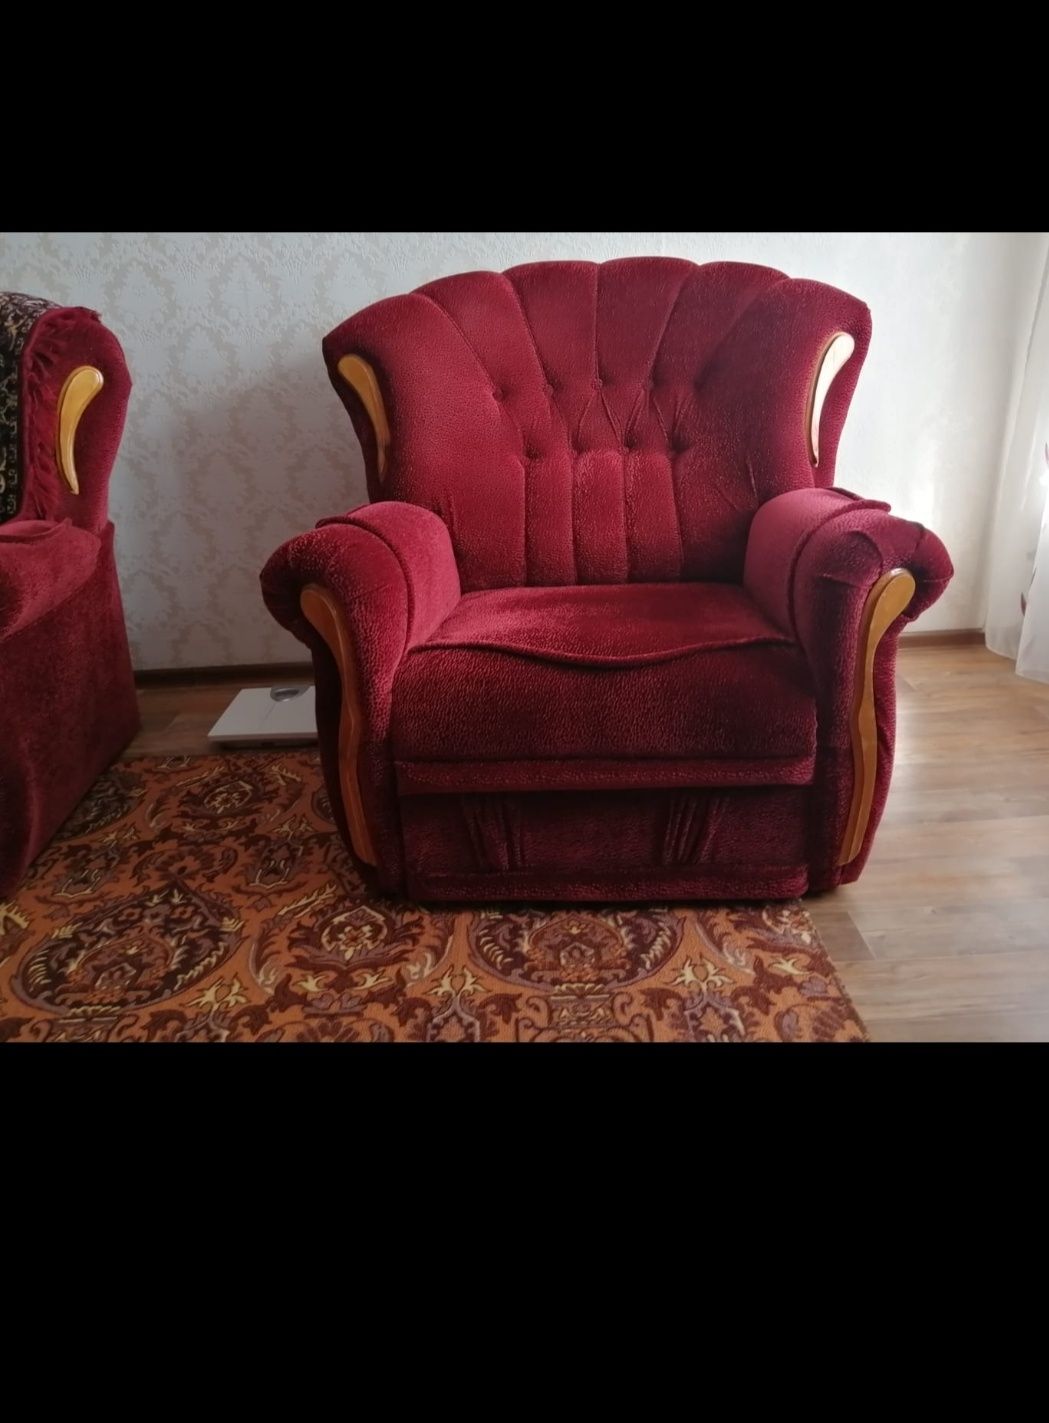 Продам мягкий уголок,диван,кресло,кресло- кровать.